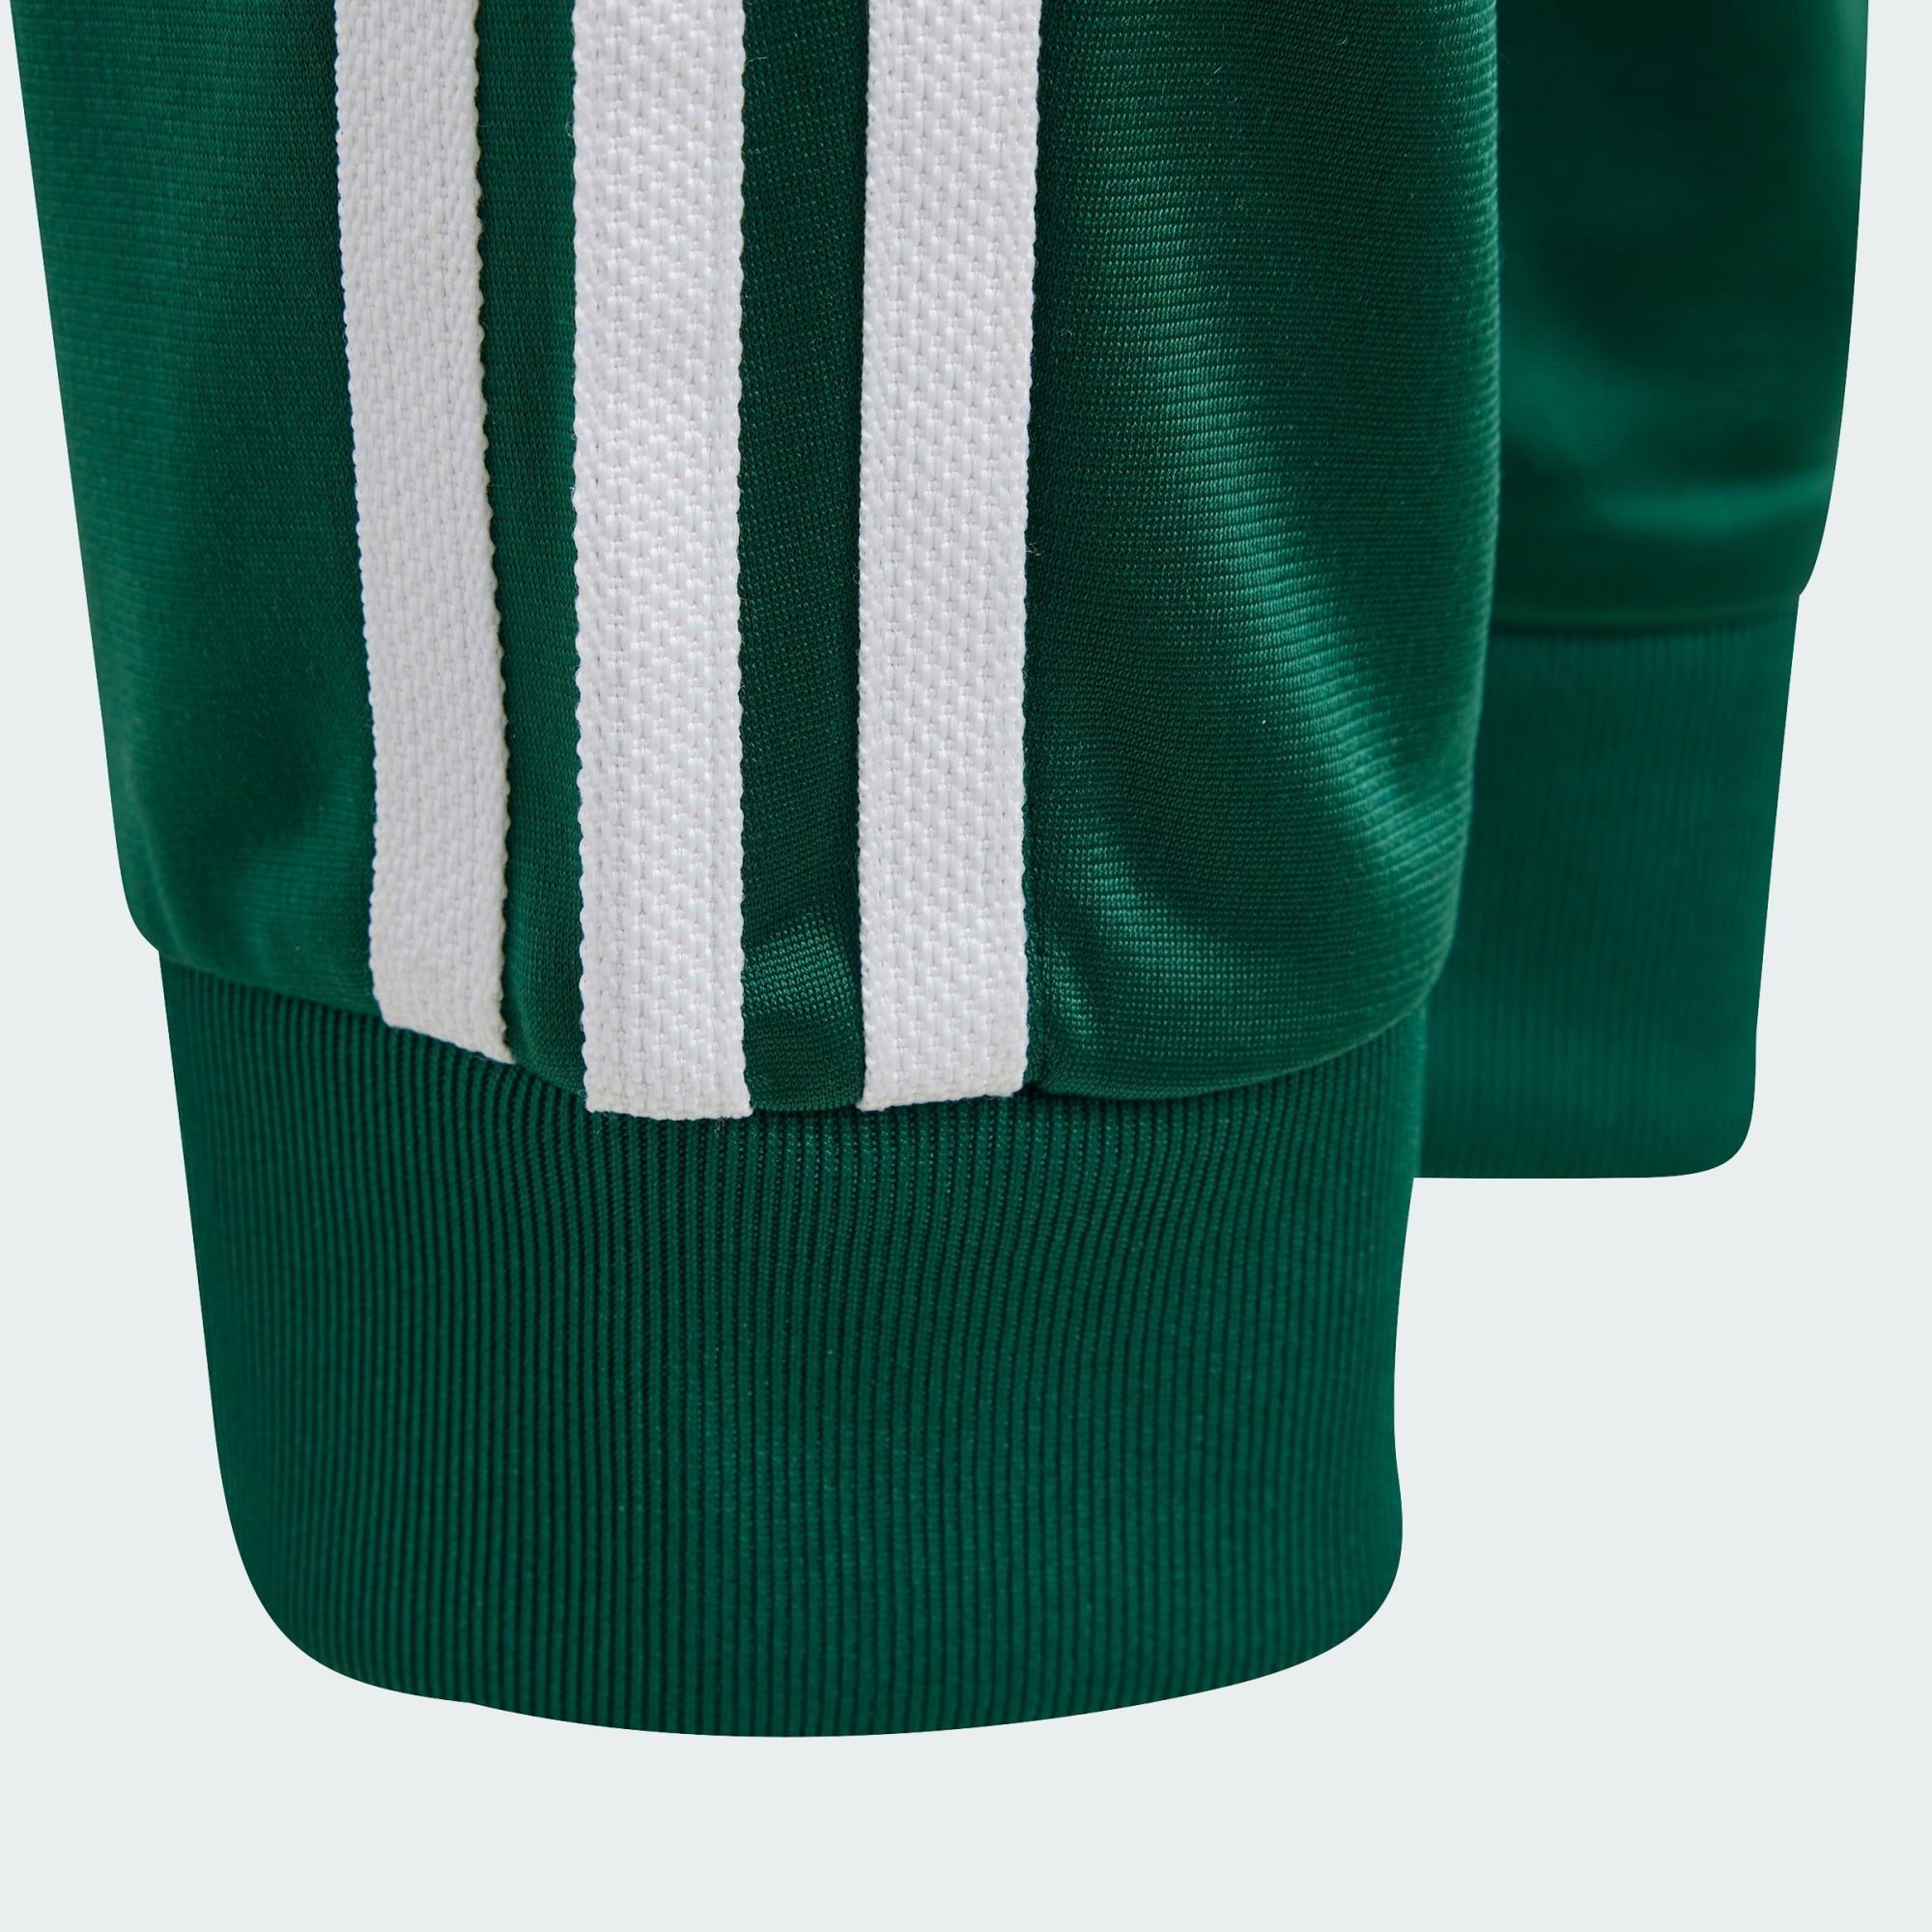 ADICOLOR SST Green adidas TRAININGSHOSE Originals Collegiate Leichtathletik-Hose